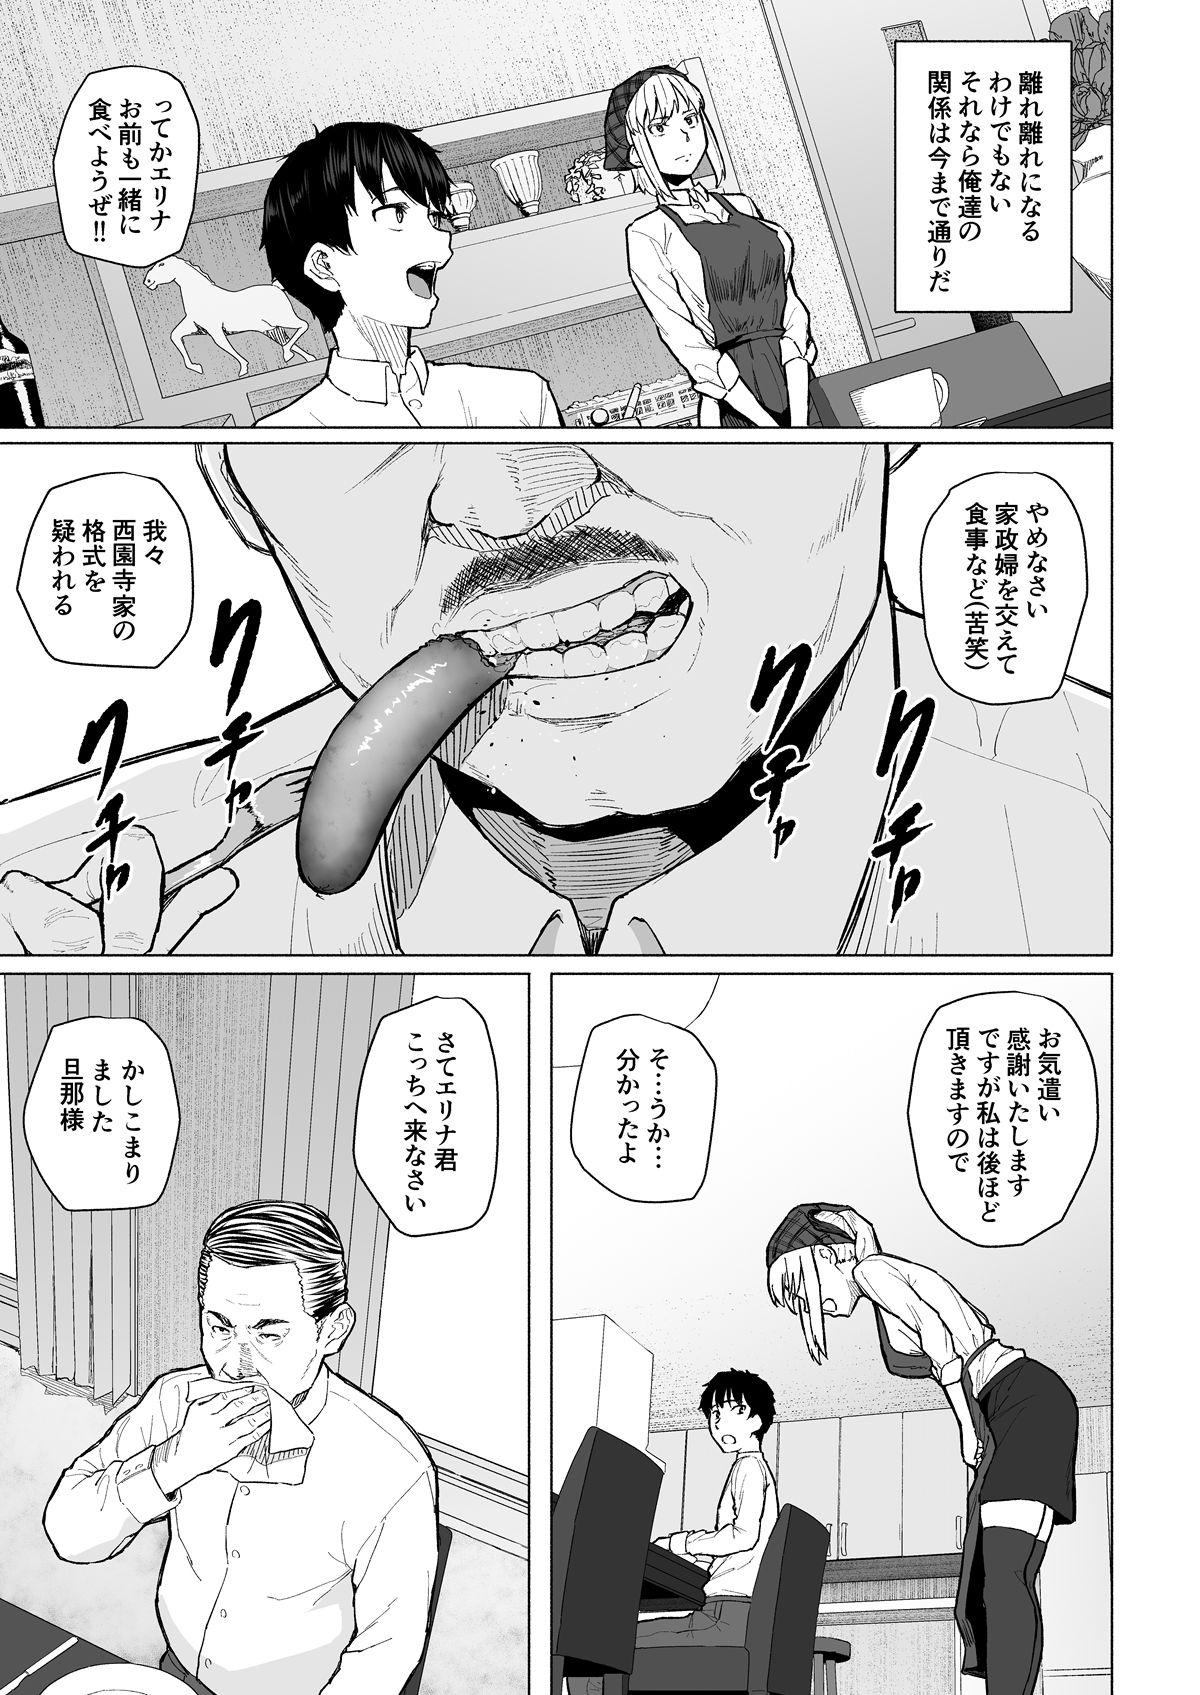 Bigass Botsu ni Shita Ero Manga 2 Project aborted Private - Page 4